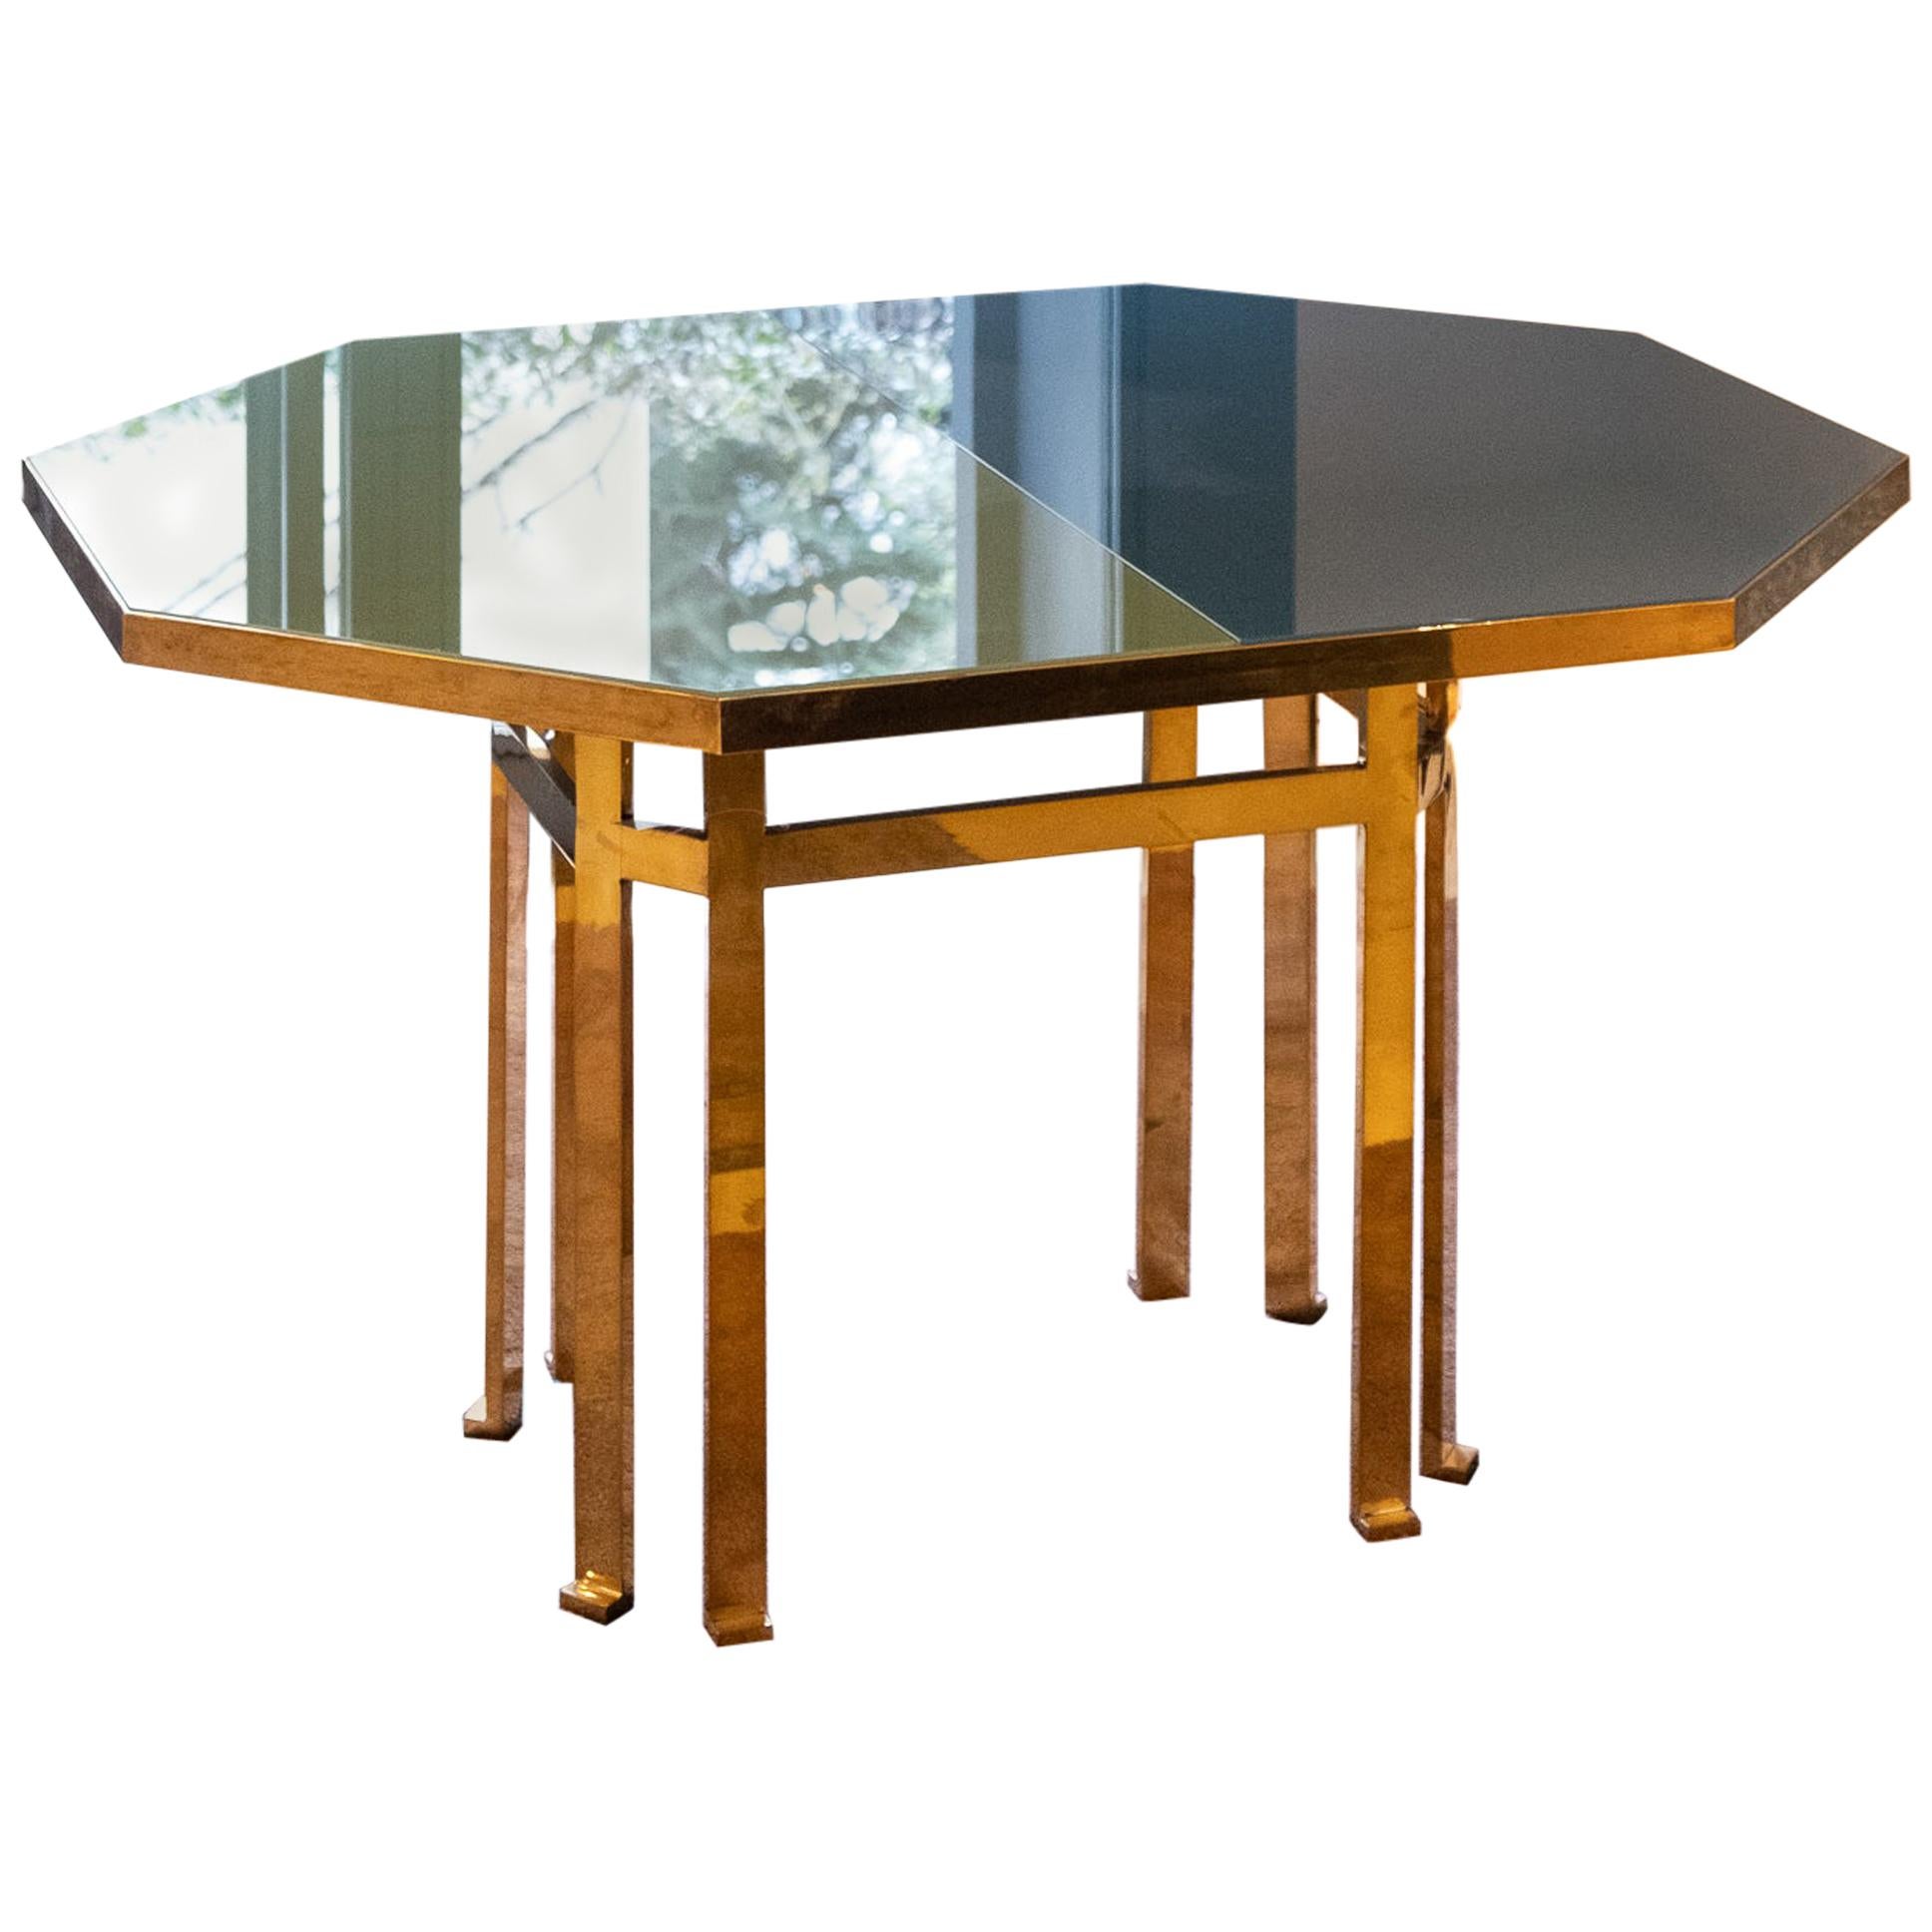 Table en laiton Filippo Feroldi du 21e siècle 130 plateau en verre différentes couleurs